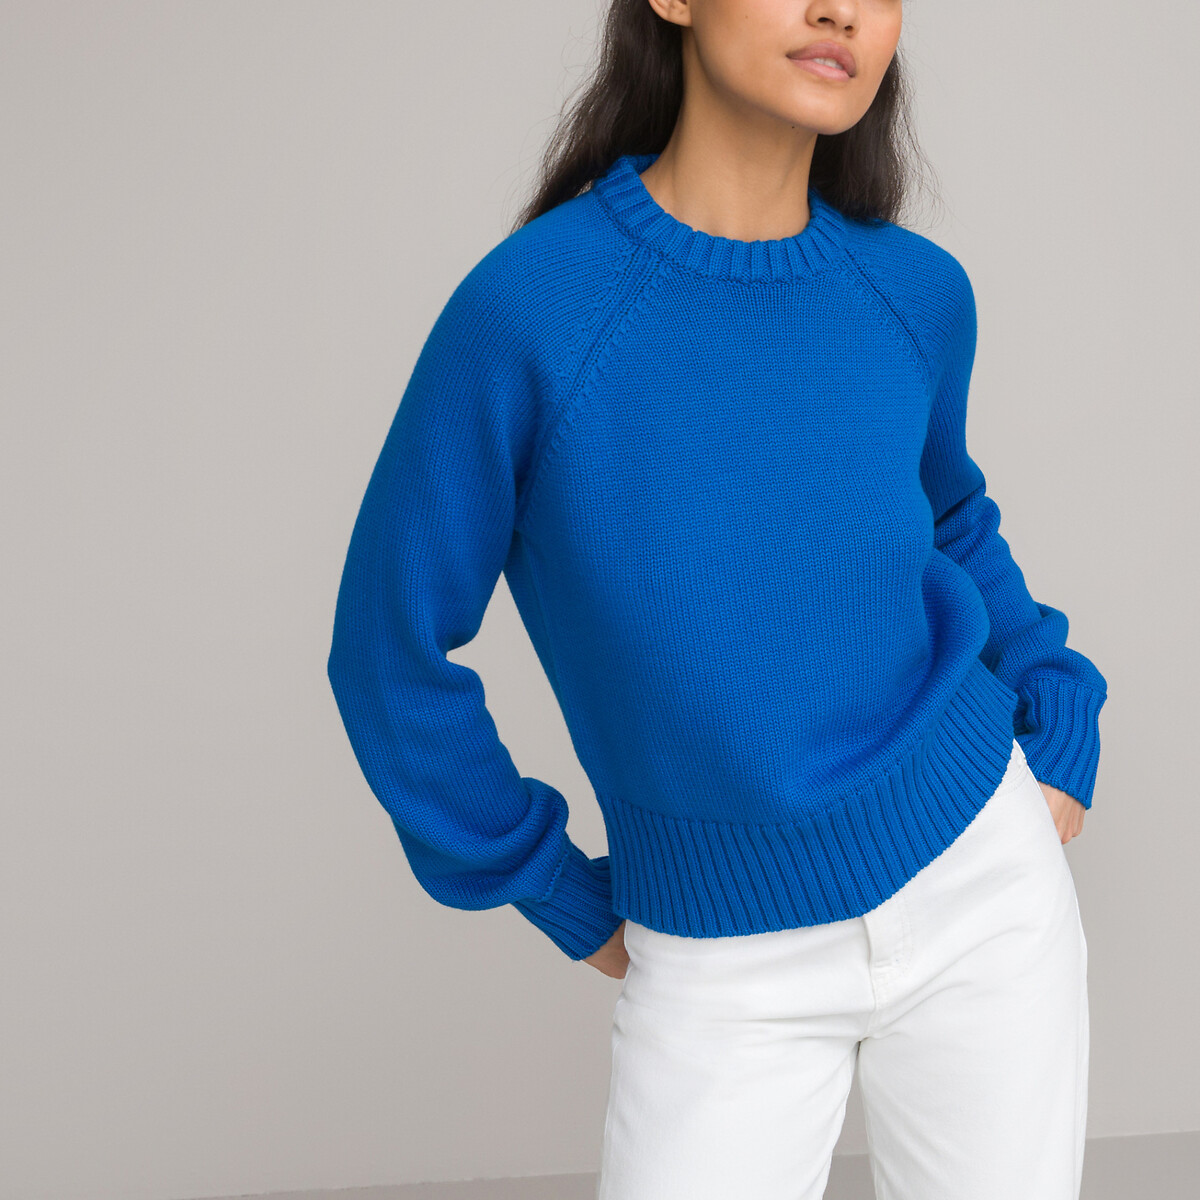 Пуловер с круглым вырезом и длинными рукавами из объемного трикотажа S синий пуловер в полоску с круглым вырезом из объемного трикотажа 5 лет 108 см бежевый